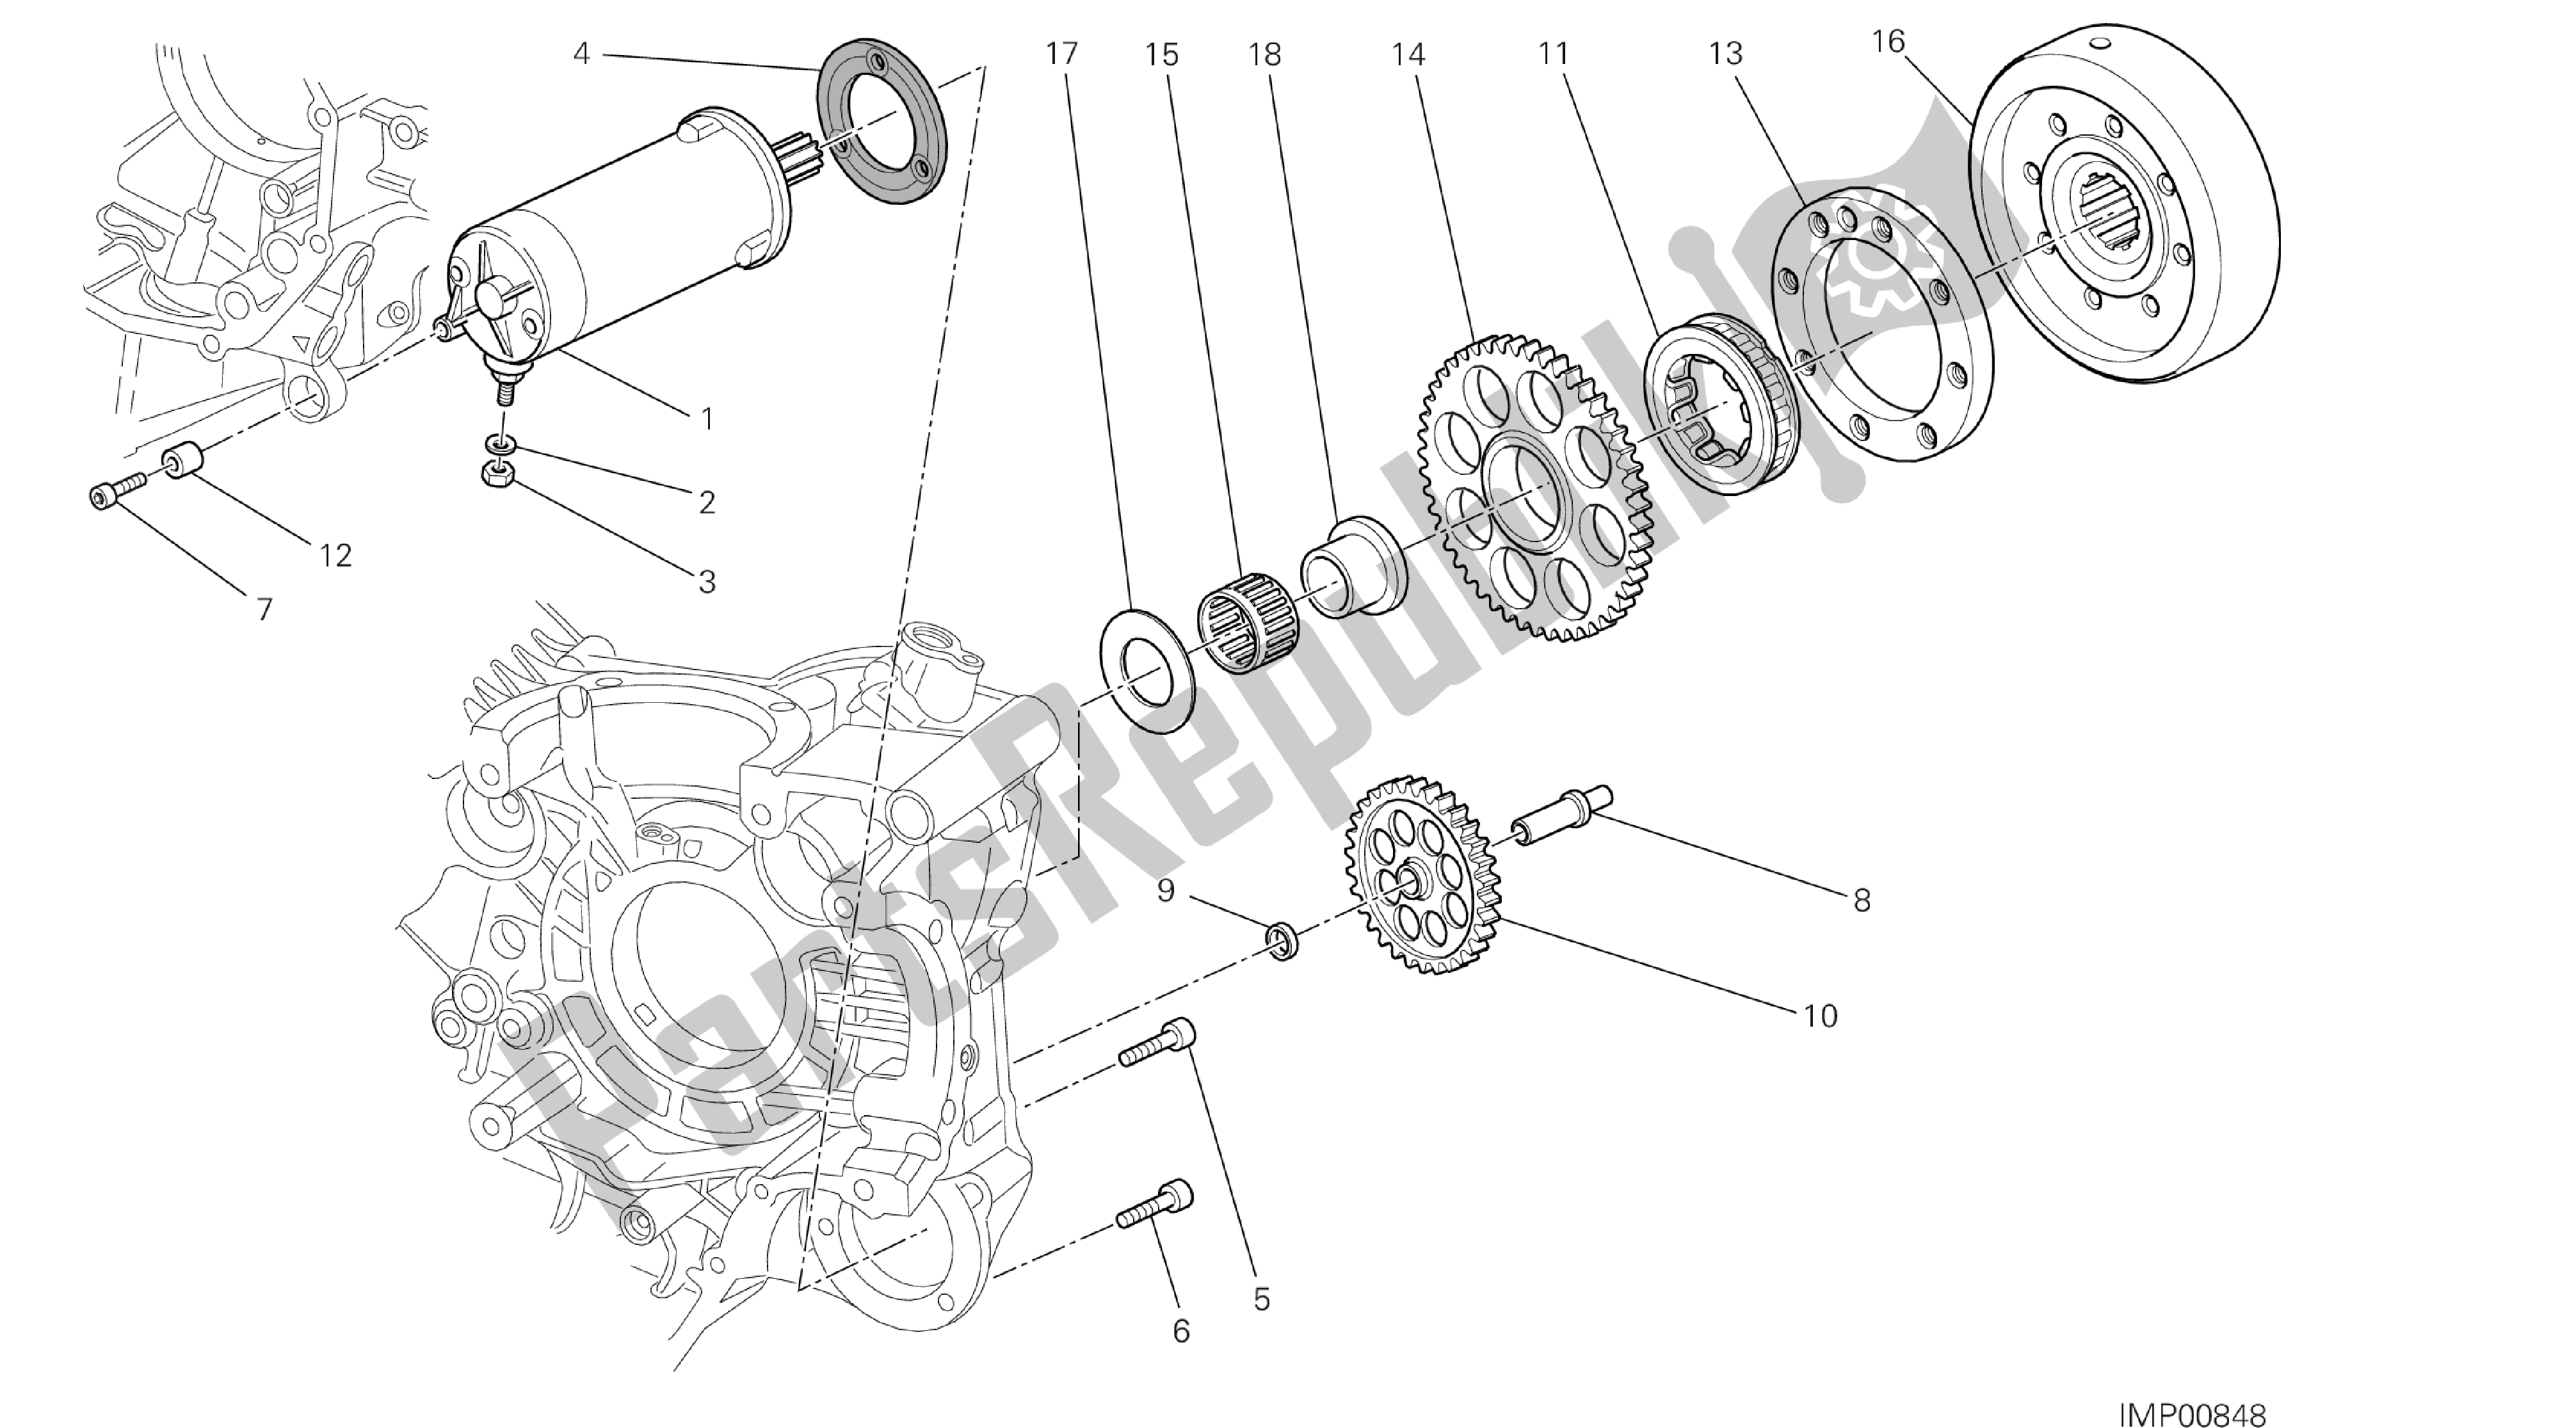 Toutes les pièces pour le Dessin 012 - Démarrage Et Allumage électriques [mod: Hyp Str; Xst: Aus, Eur, Fra, Jap] Group Engi Ne du Ducati Hypermotard SP 821 2013